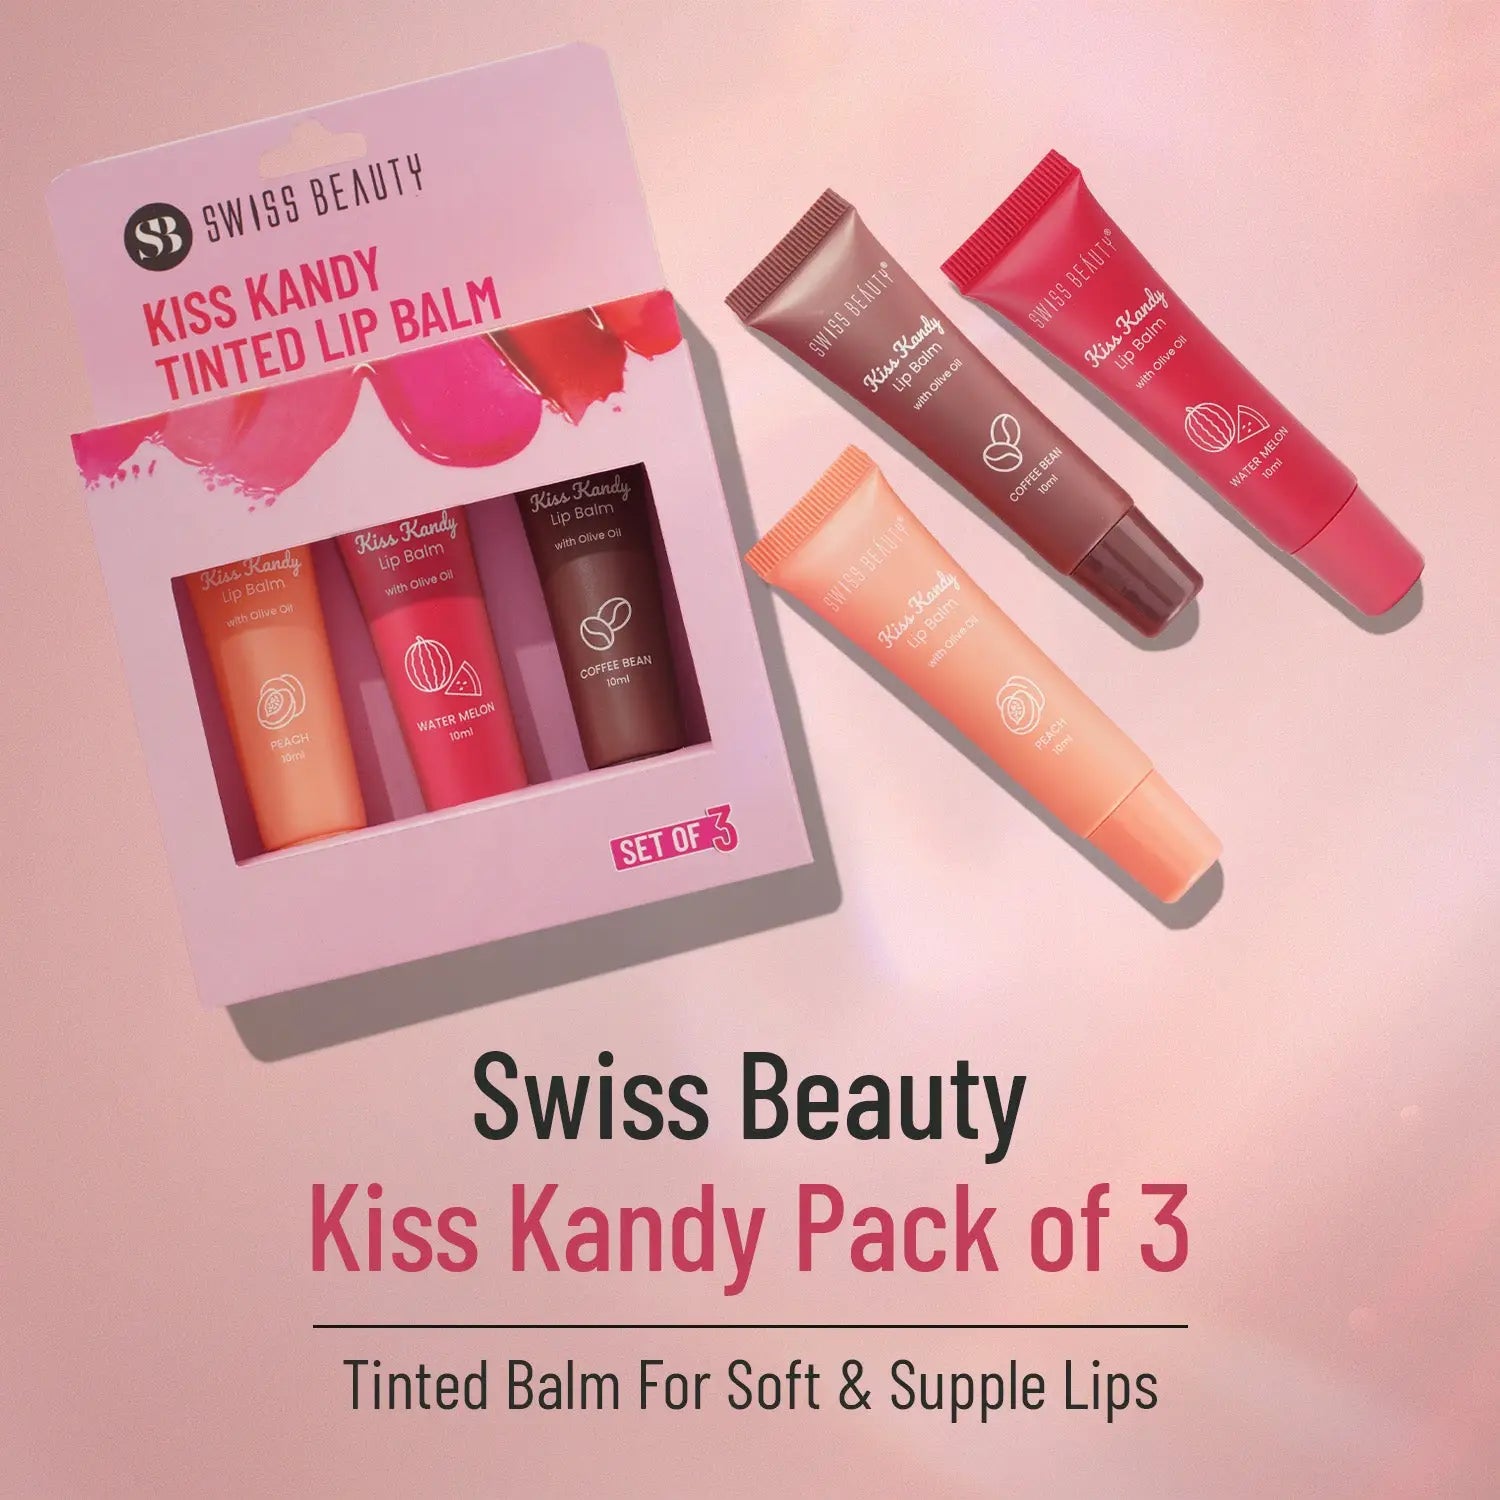 Swiss Beauty Kiss Kandy Lip Balm Pack of 3